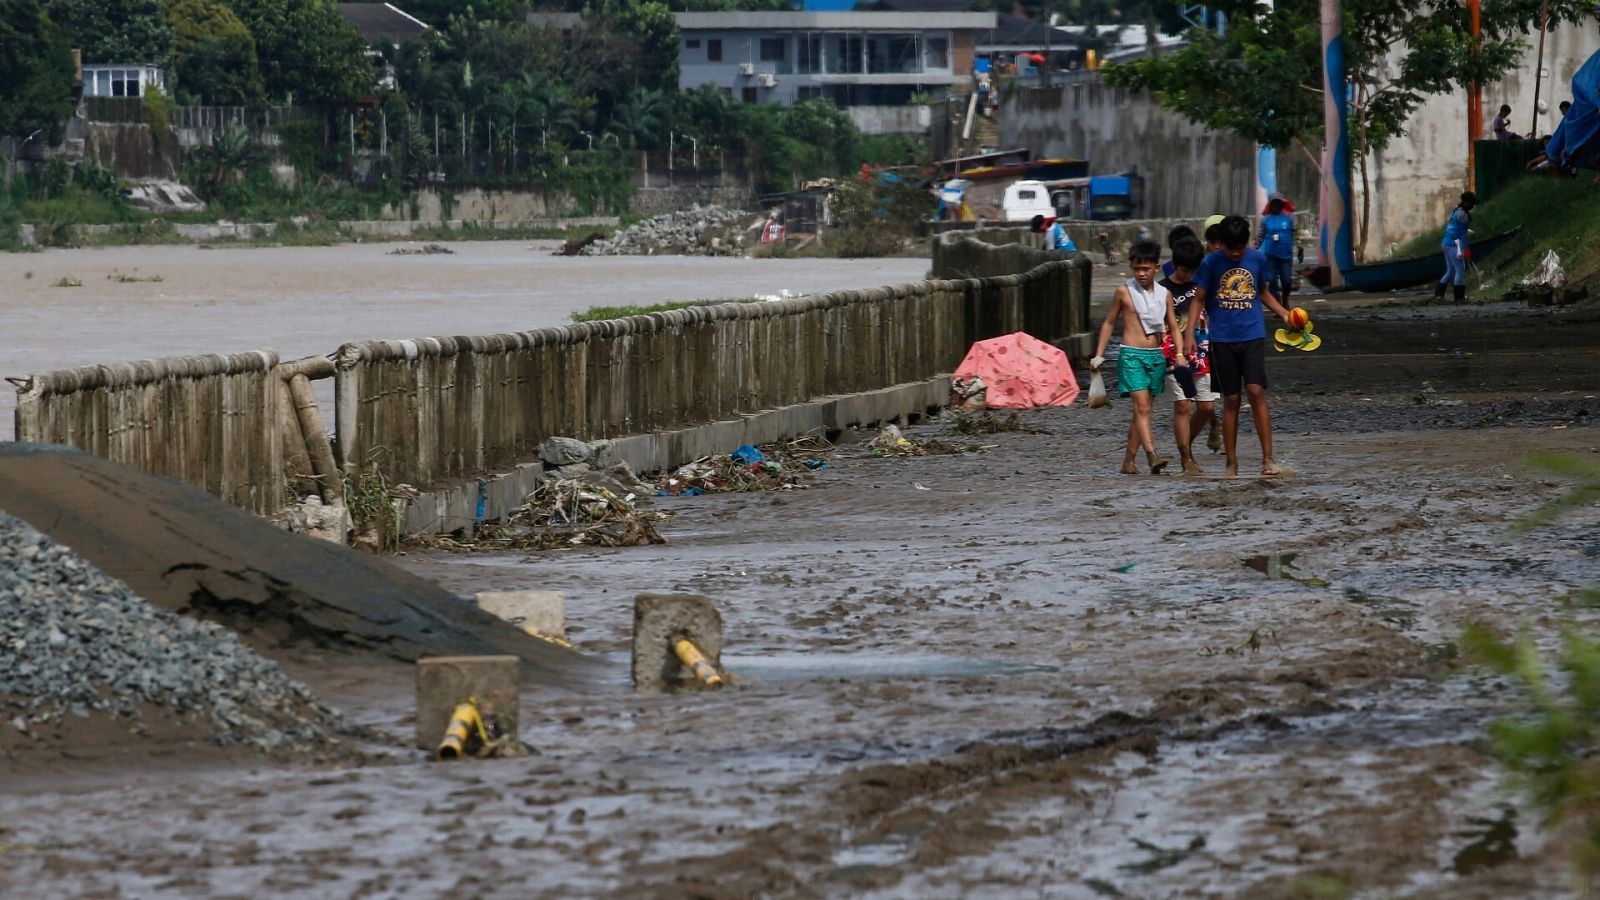 Niños caminando por el barro tras el tifón  'Nalgae' en Marikina City, Filipinas